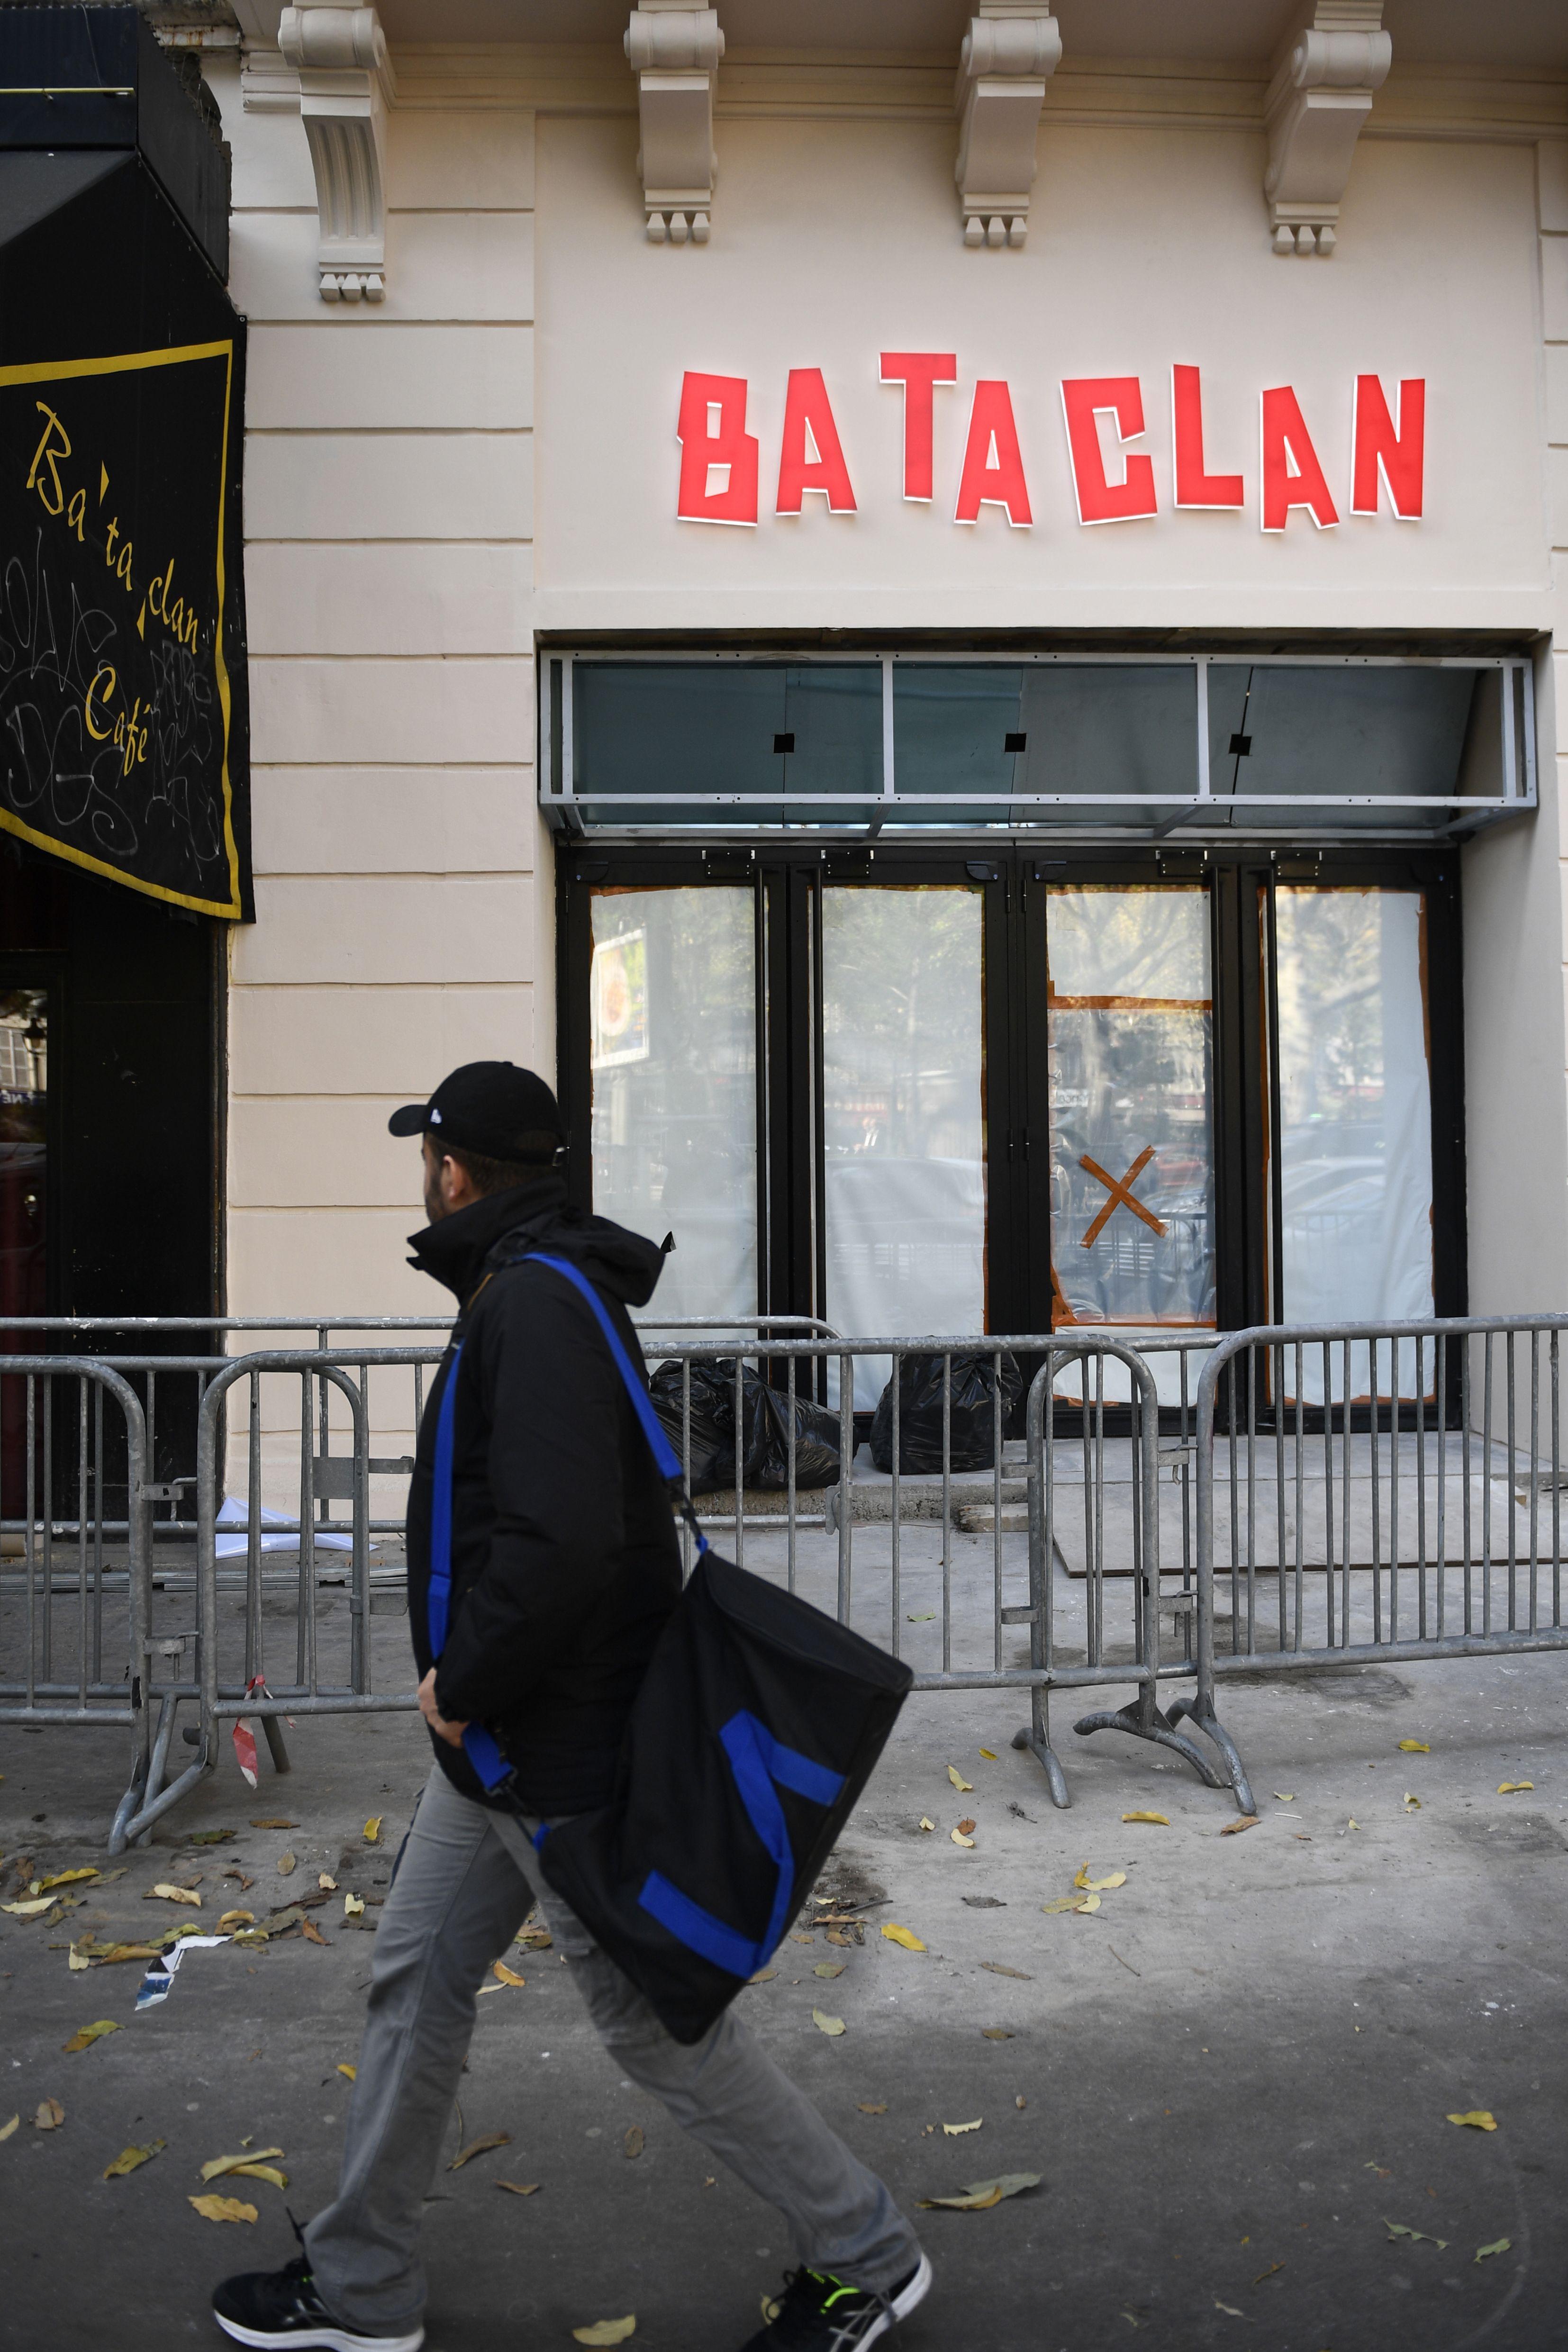 La nuova insegna sulla facciata del teatro Bataclan, uno dei luoghi degli attentati del 13 novembre 2015 a Parigi (Afp)